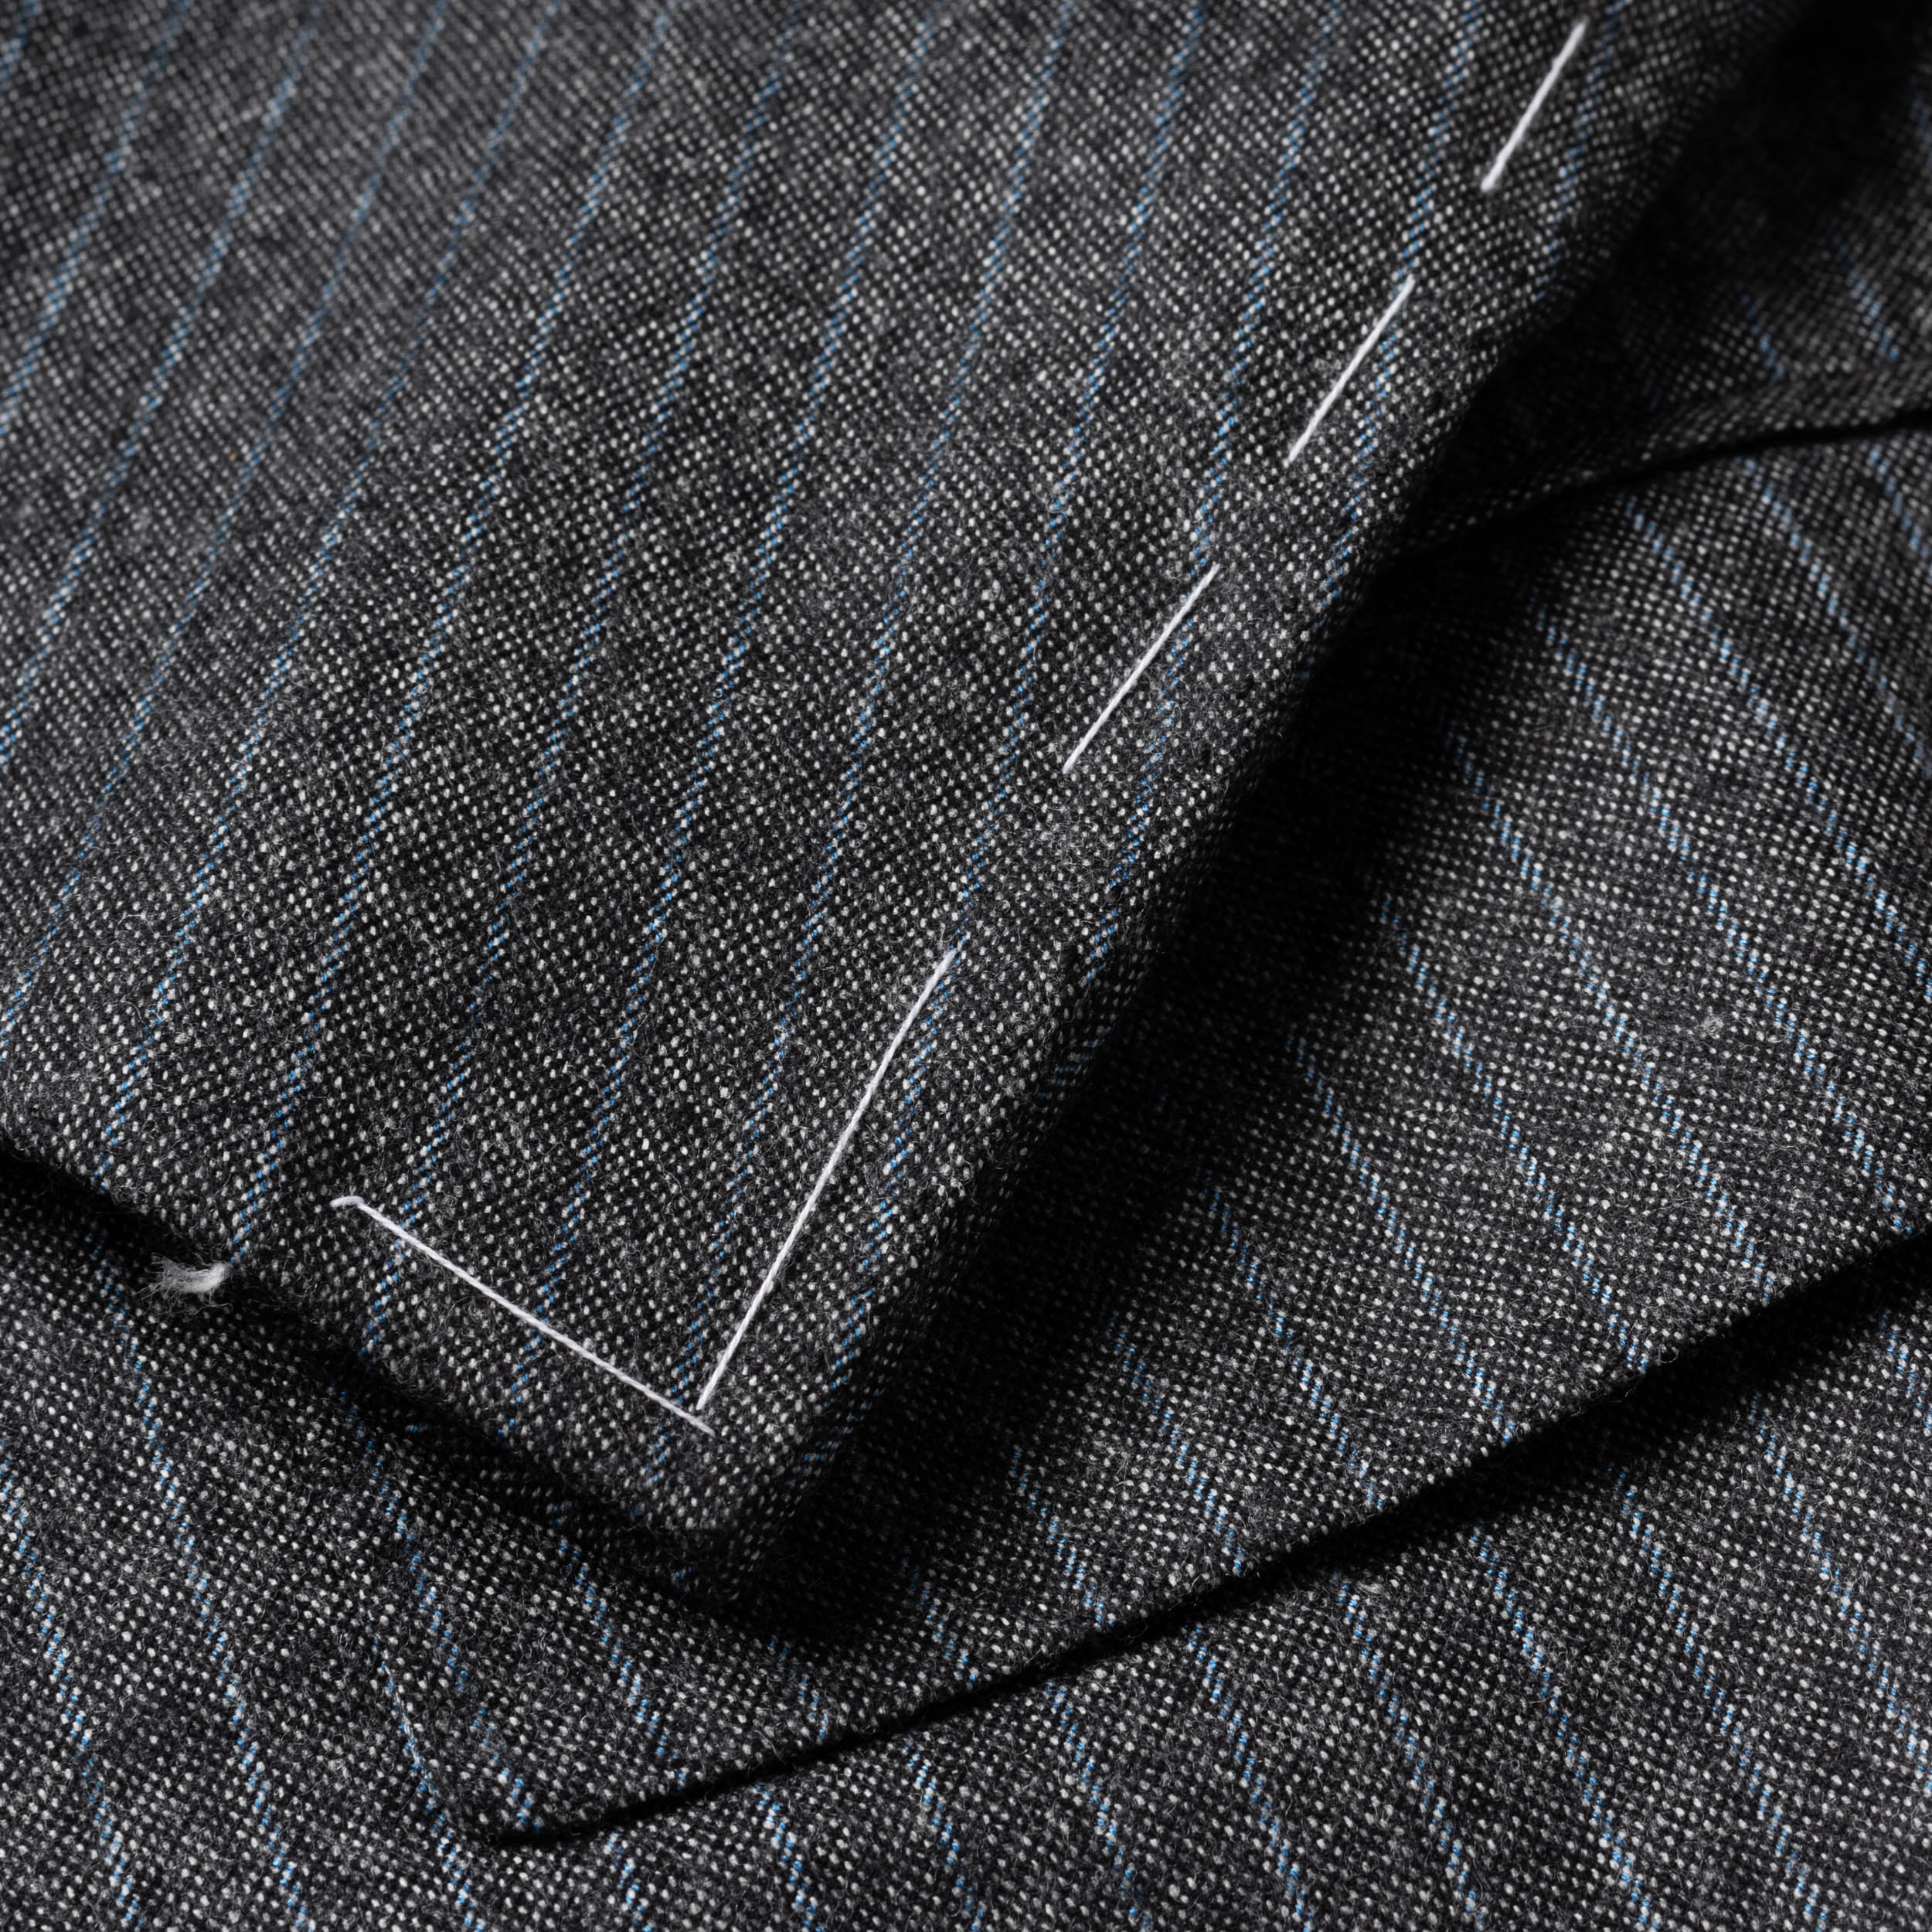 CESARE ATTOLINI Gray Striped Wool Super 120's Cashmere Flannel Suit 60 NEW US 50 CESARE ATTOLINI